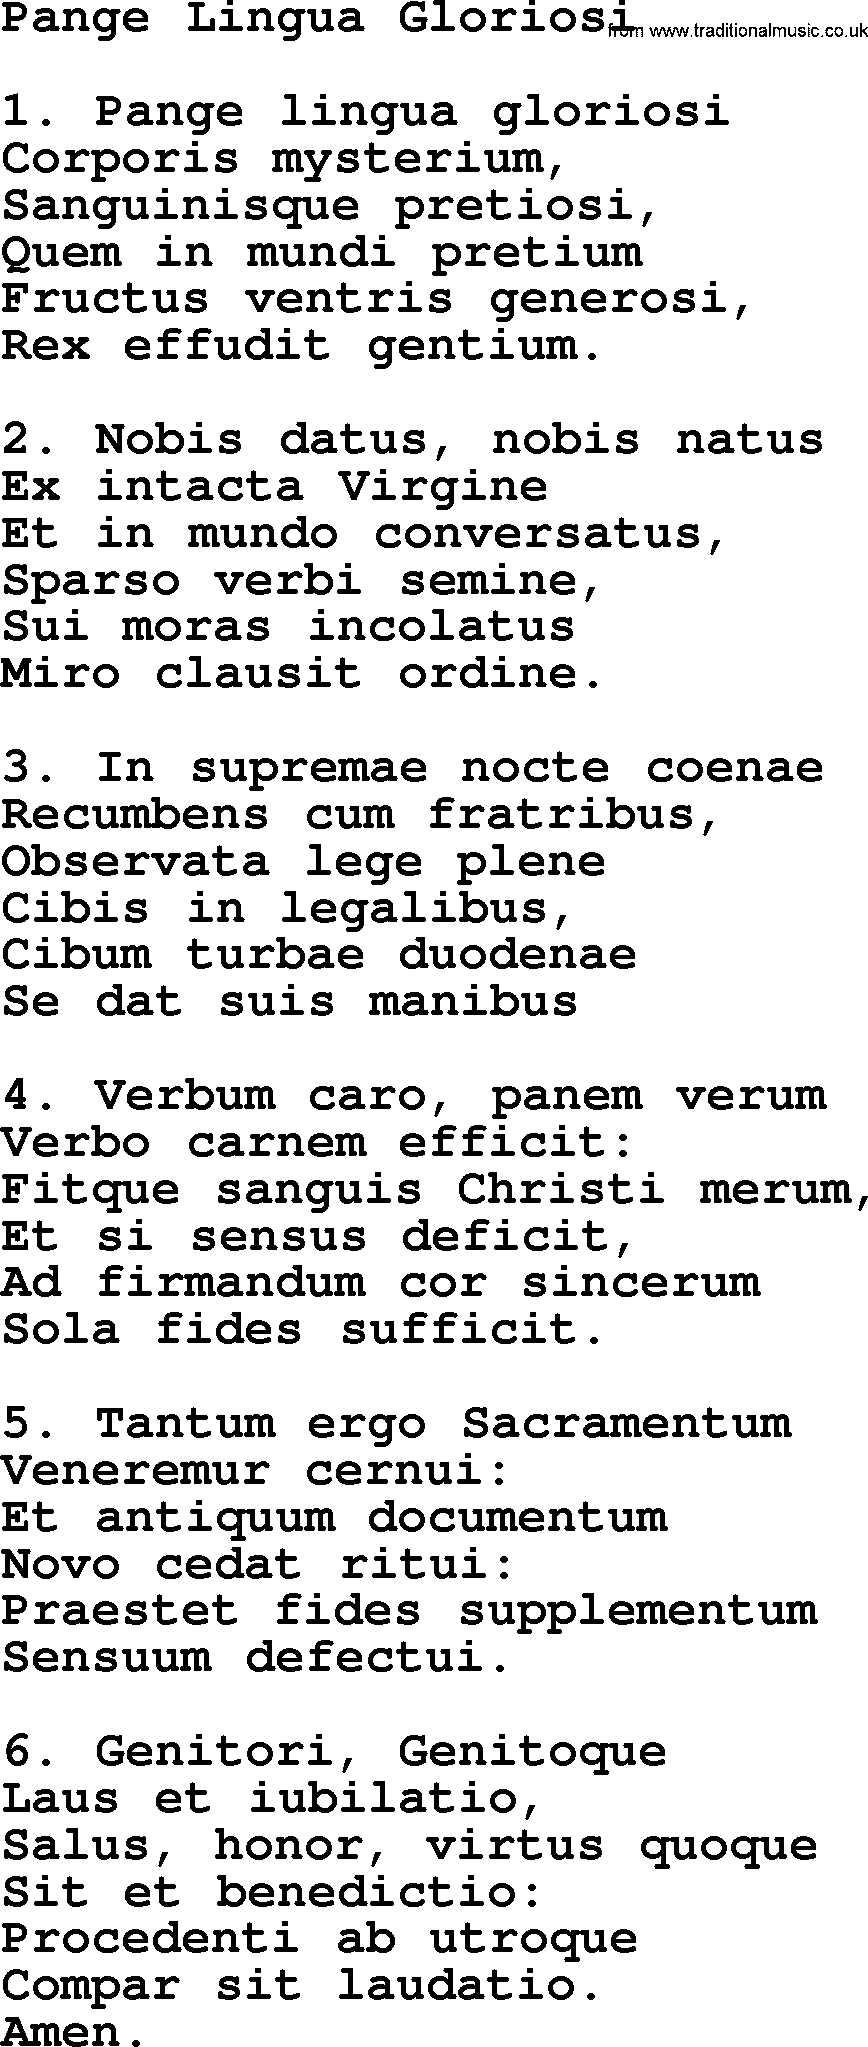 Catholic Hymn: Pange Lingua Gloriosi lyrics with PDF